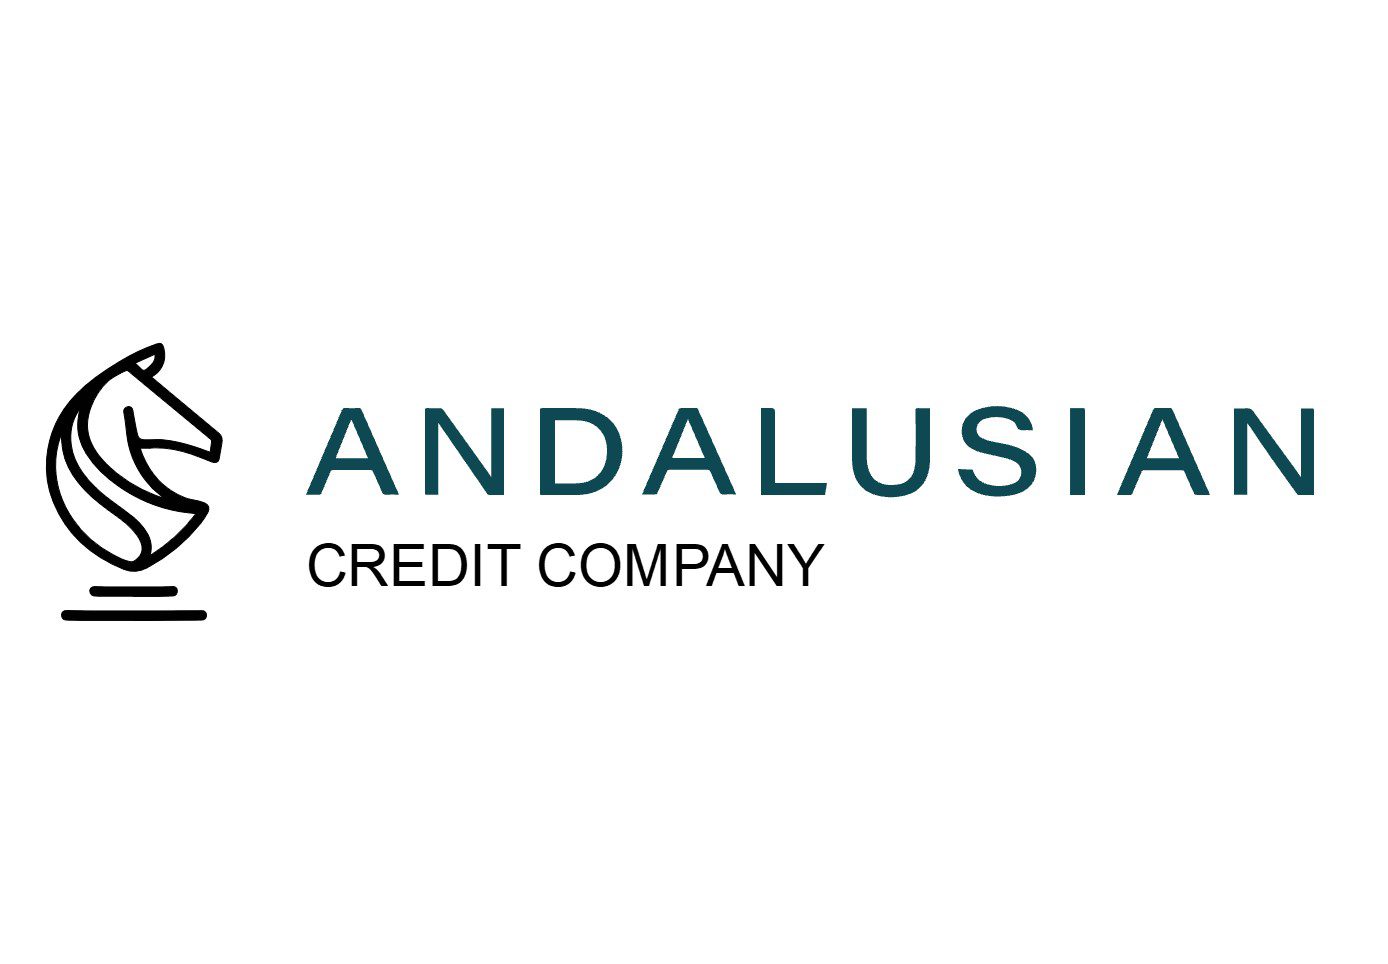 Andalusian Credit Company v2